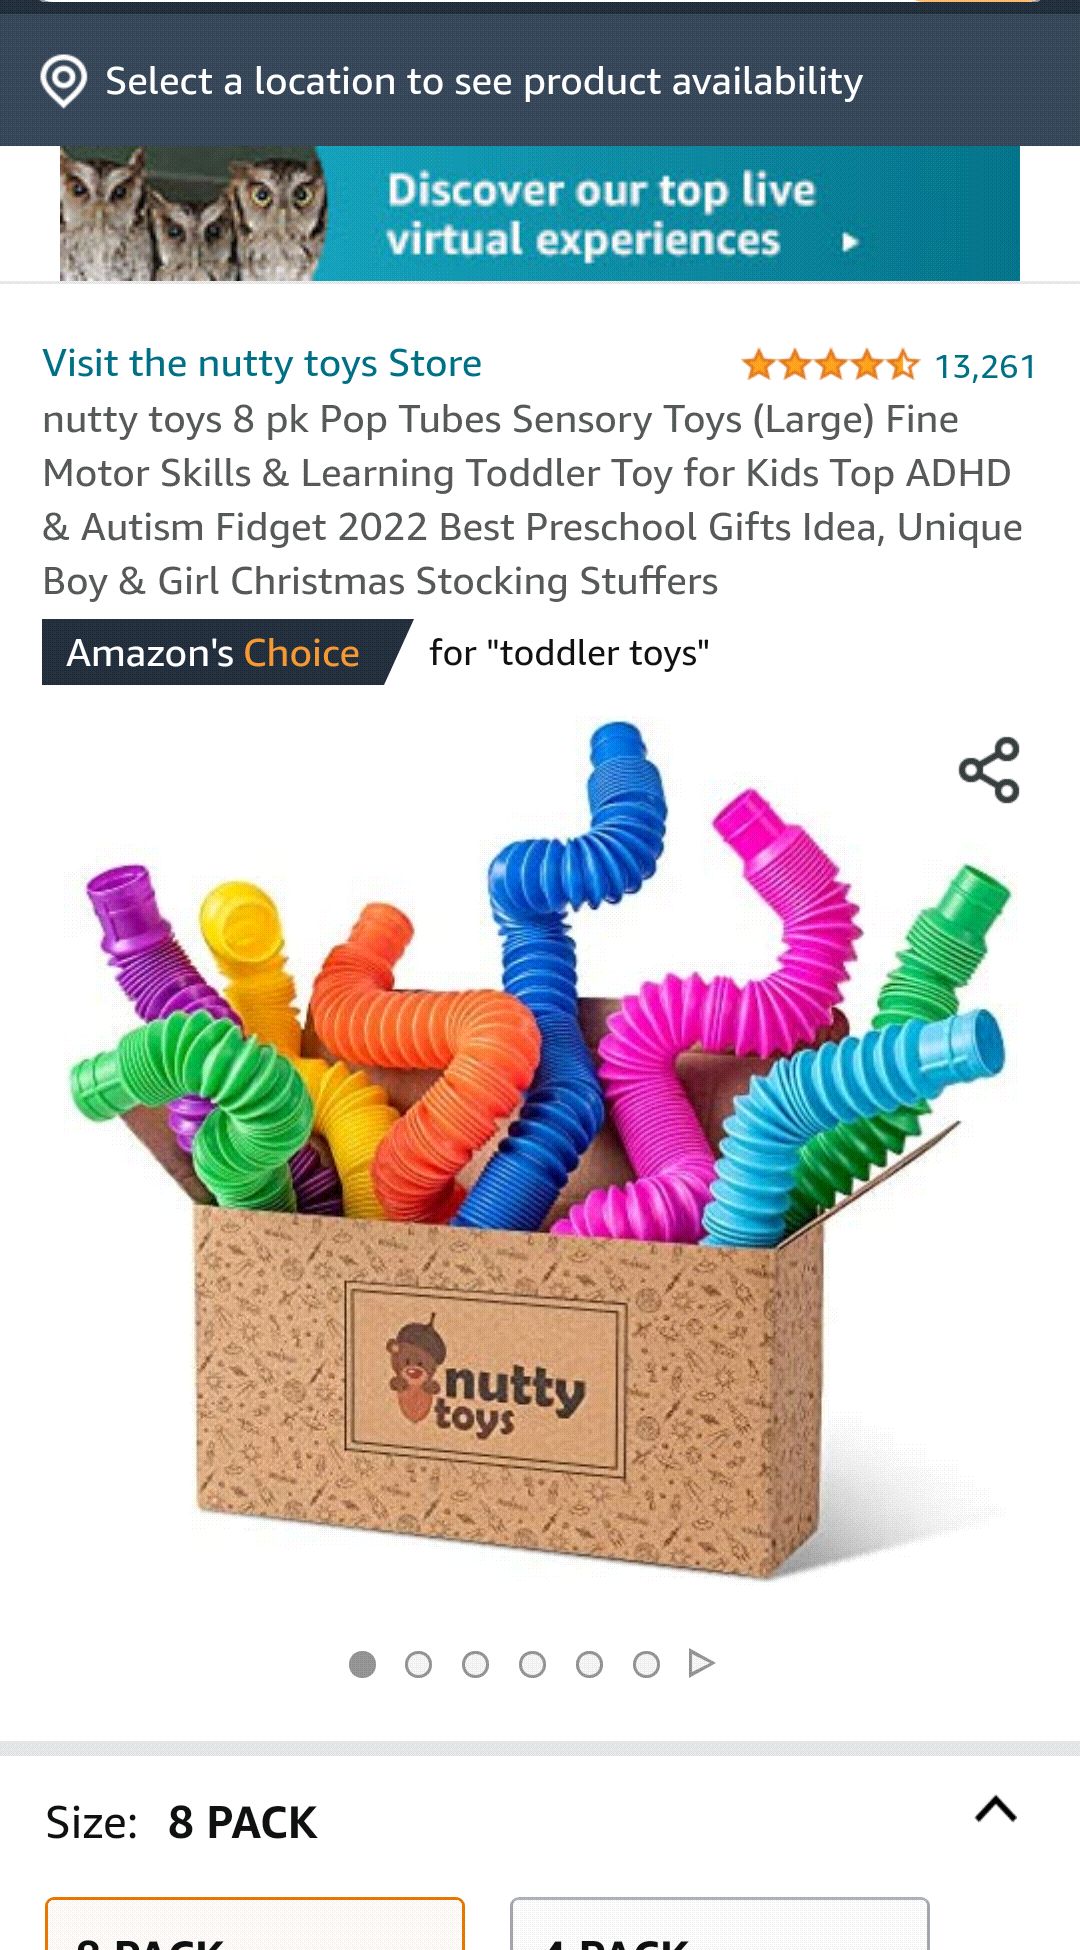 感官玩具 8 pk Pop Tubes Sensory Toys (Large) Fine Motor Skills & Learning Toddler Toy for Kids Top ADHD & Autism Fidget 2022 Best Preschool Gifts Idea, Unique Boy